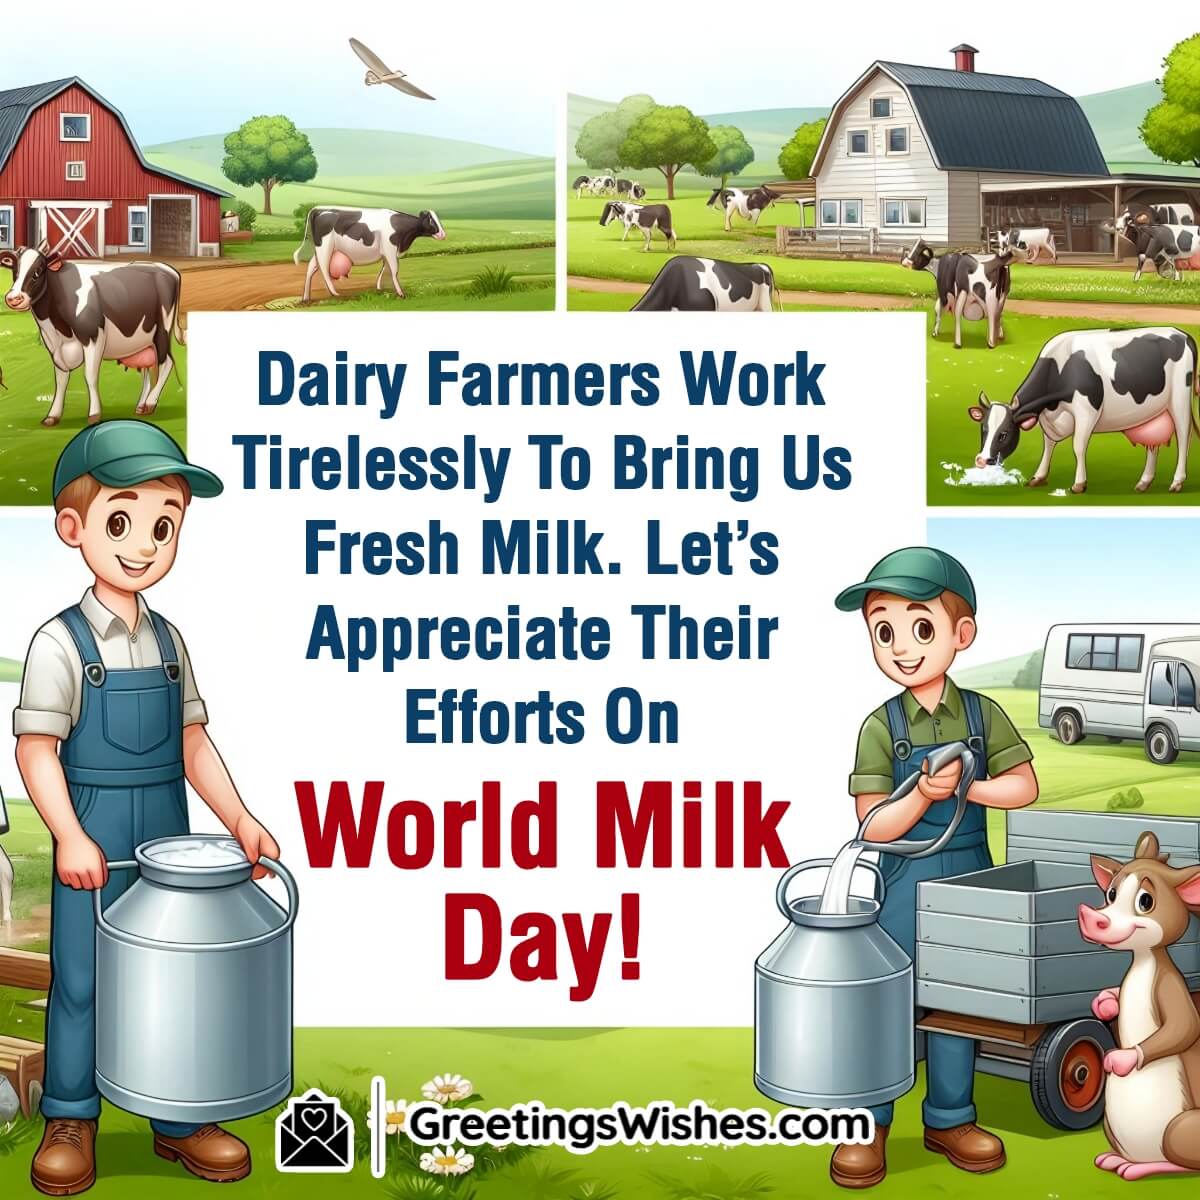 World Milk Day Message